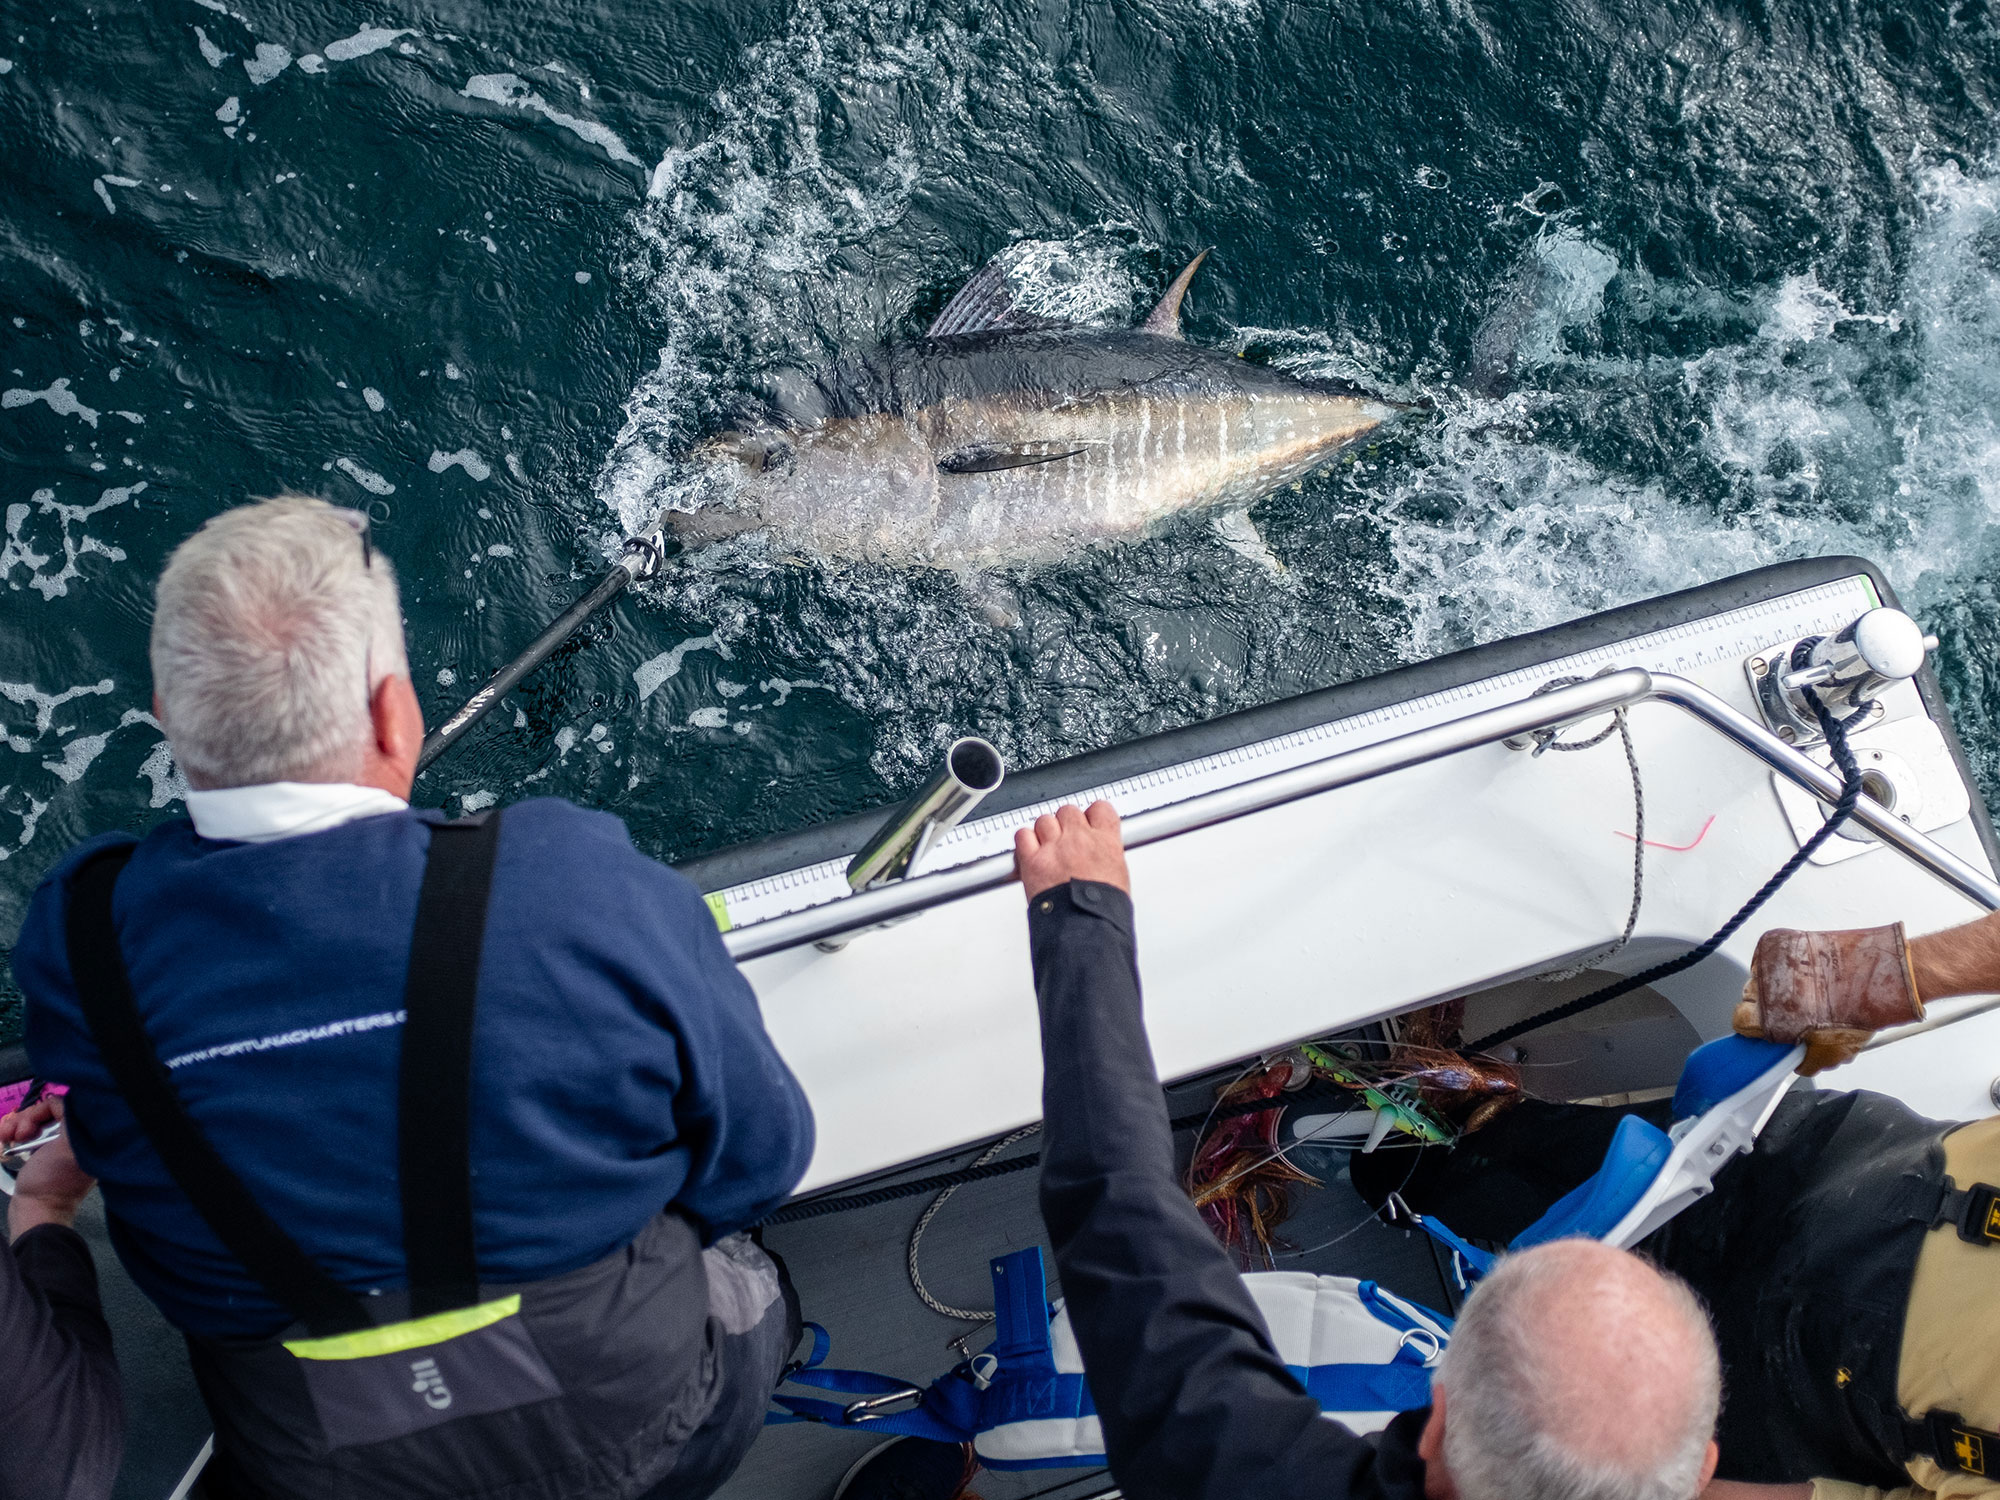 Bluefin tuna fishing in the UK